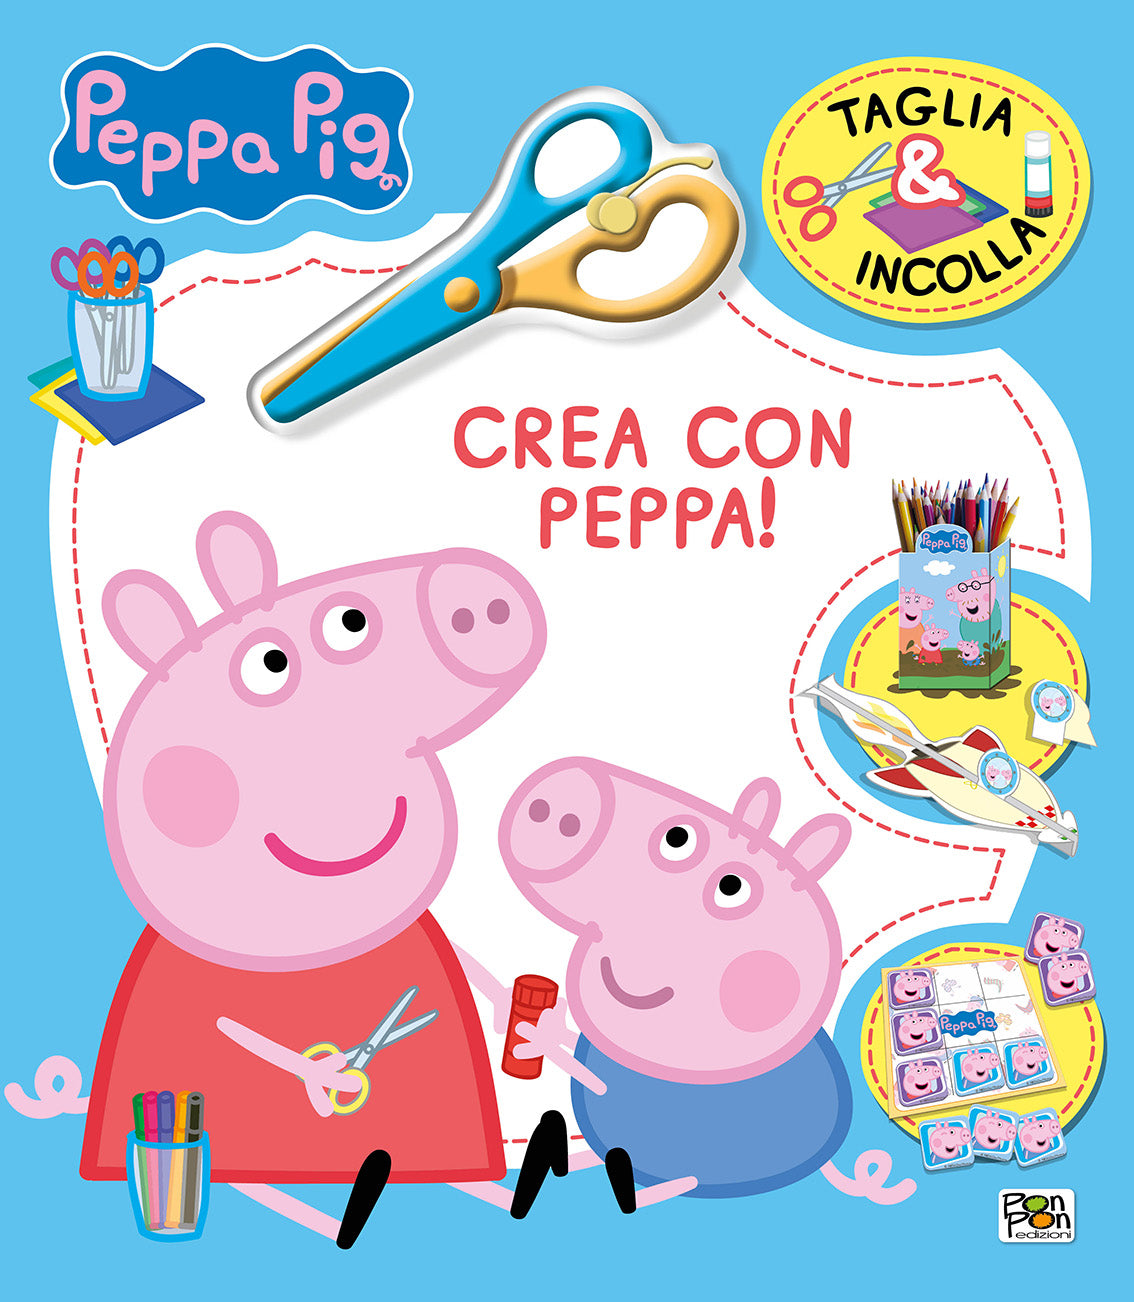 Peppa Pig. Taglia & Incolla. Crea con Peppa: libro di Lisa Capiotto